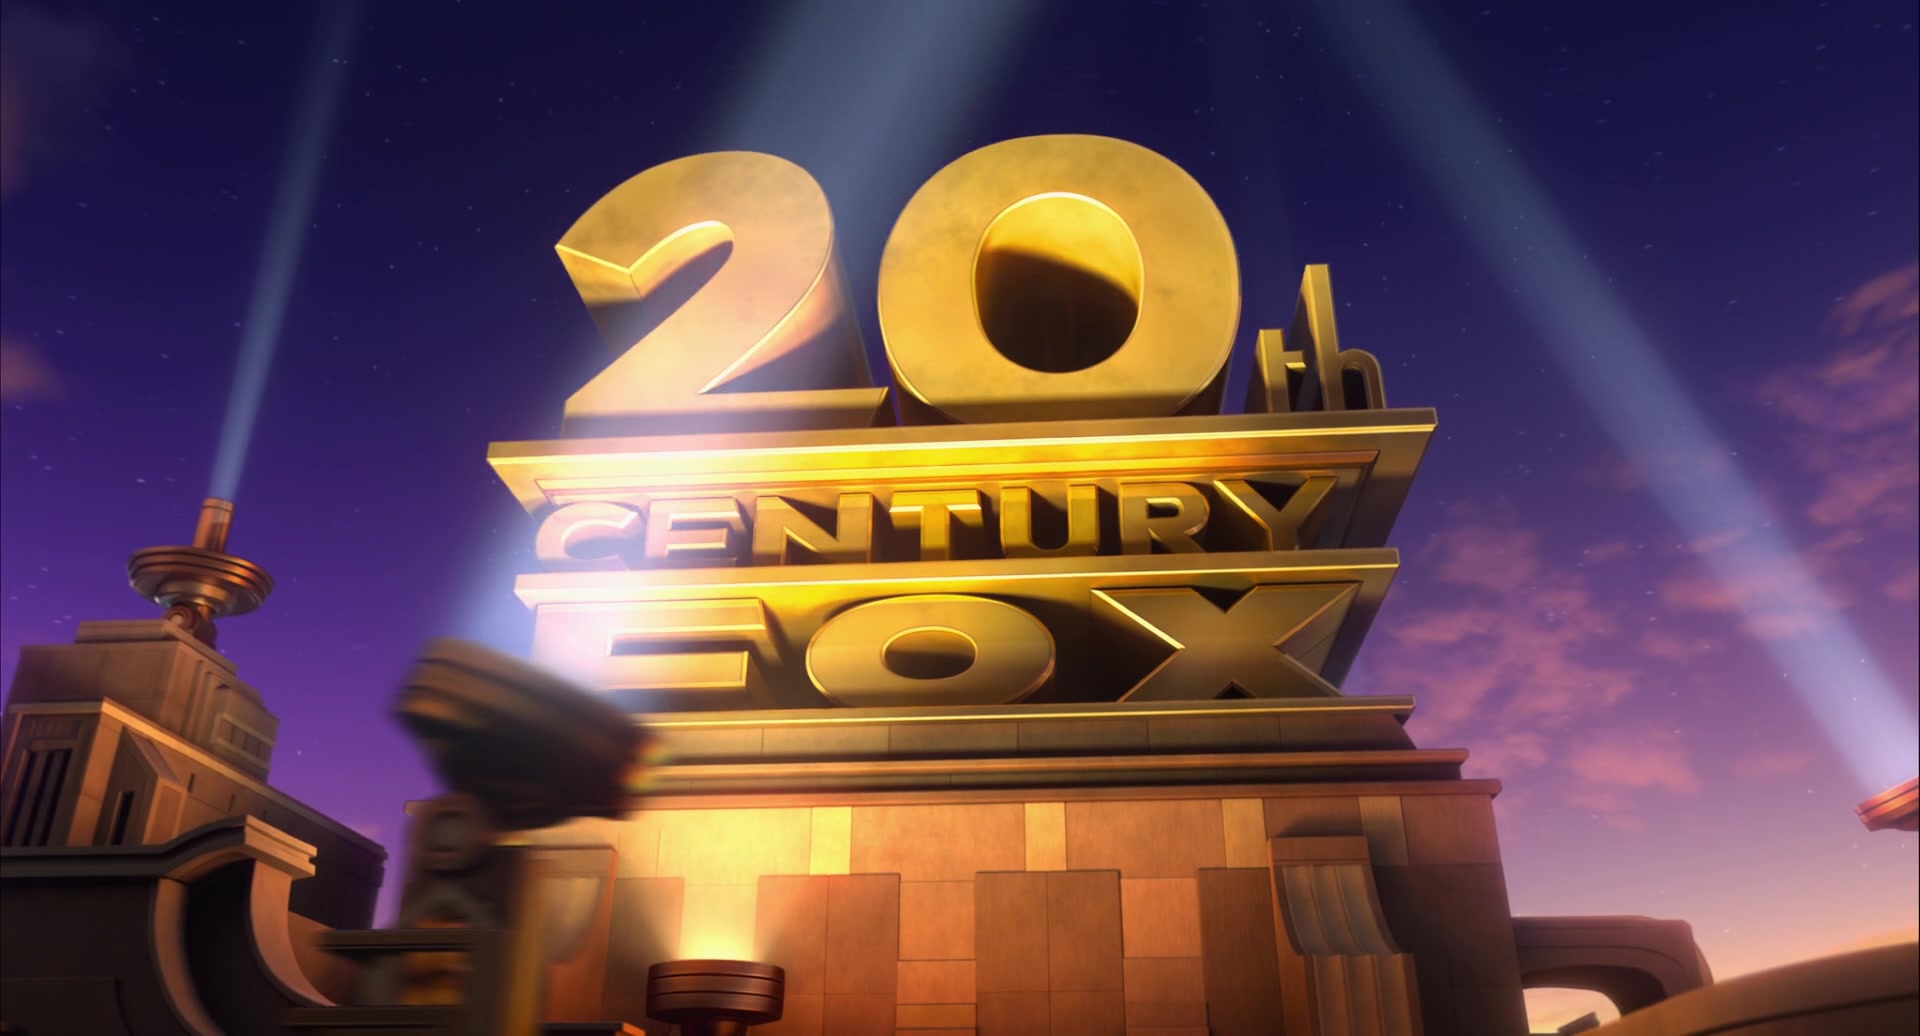 Дисней 20. 20th Century Fox Дримворкс. 20th Century Fox России. 20 Век Фокс хоум Энтертейнмент. Двадцатый век Фокс 2013 Dreamworks animation.